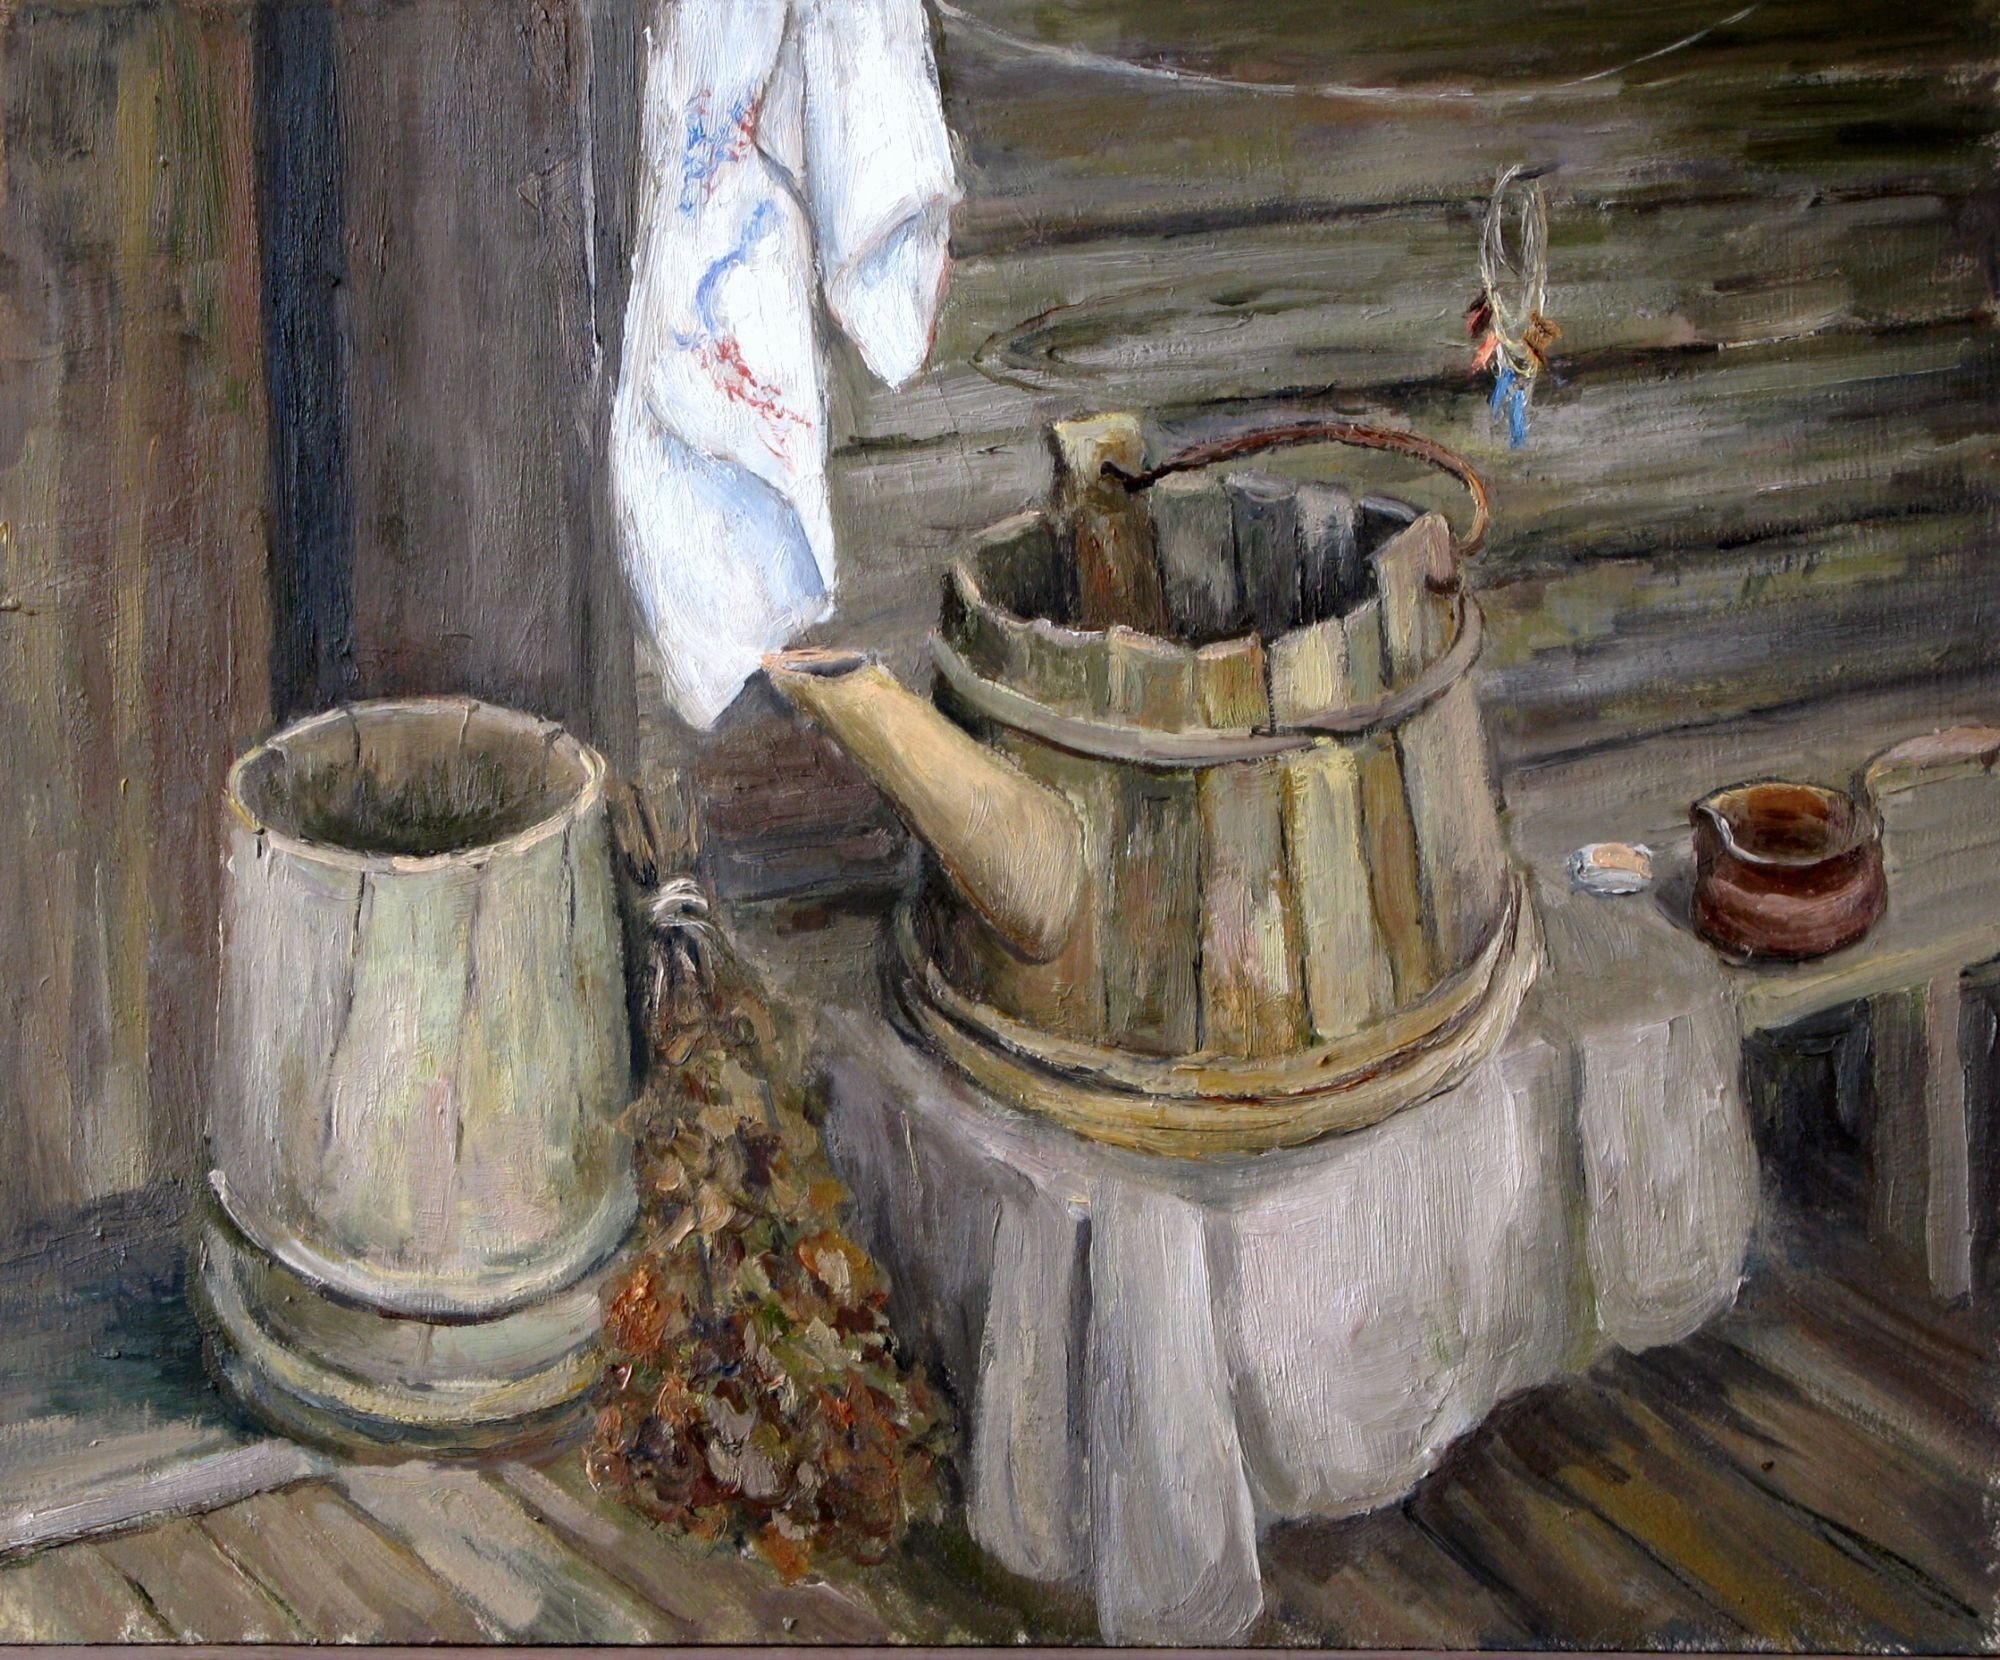 Картины художников о бане